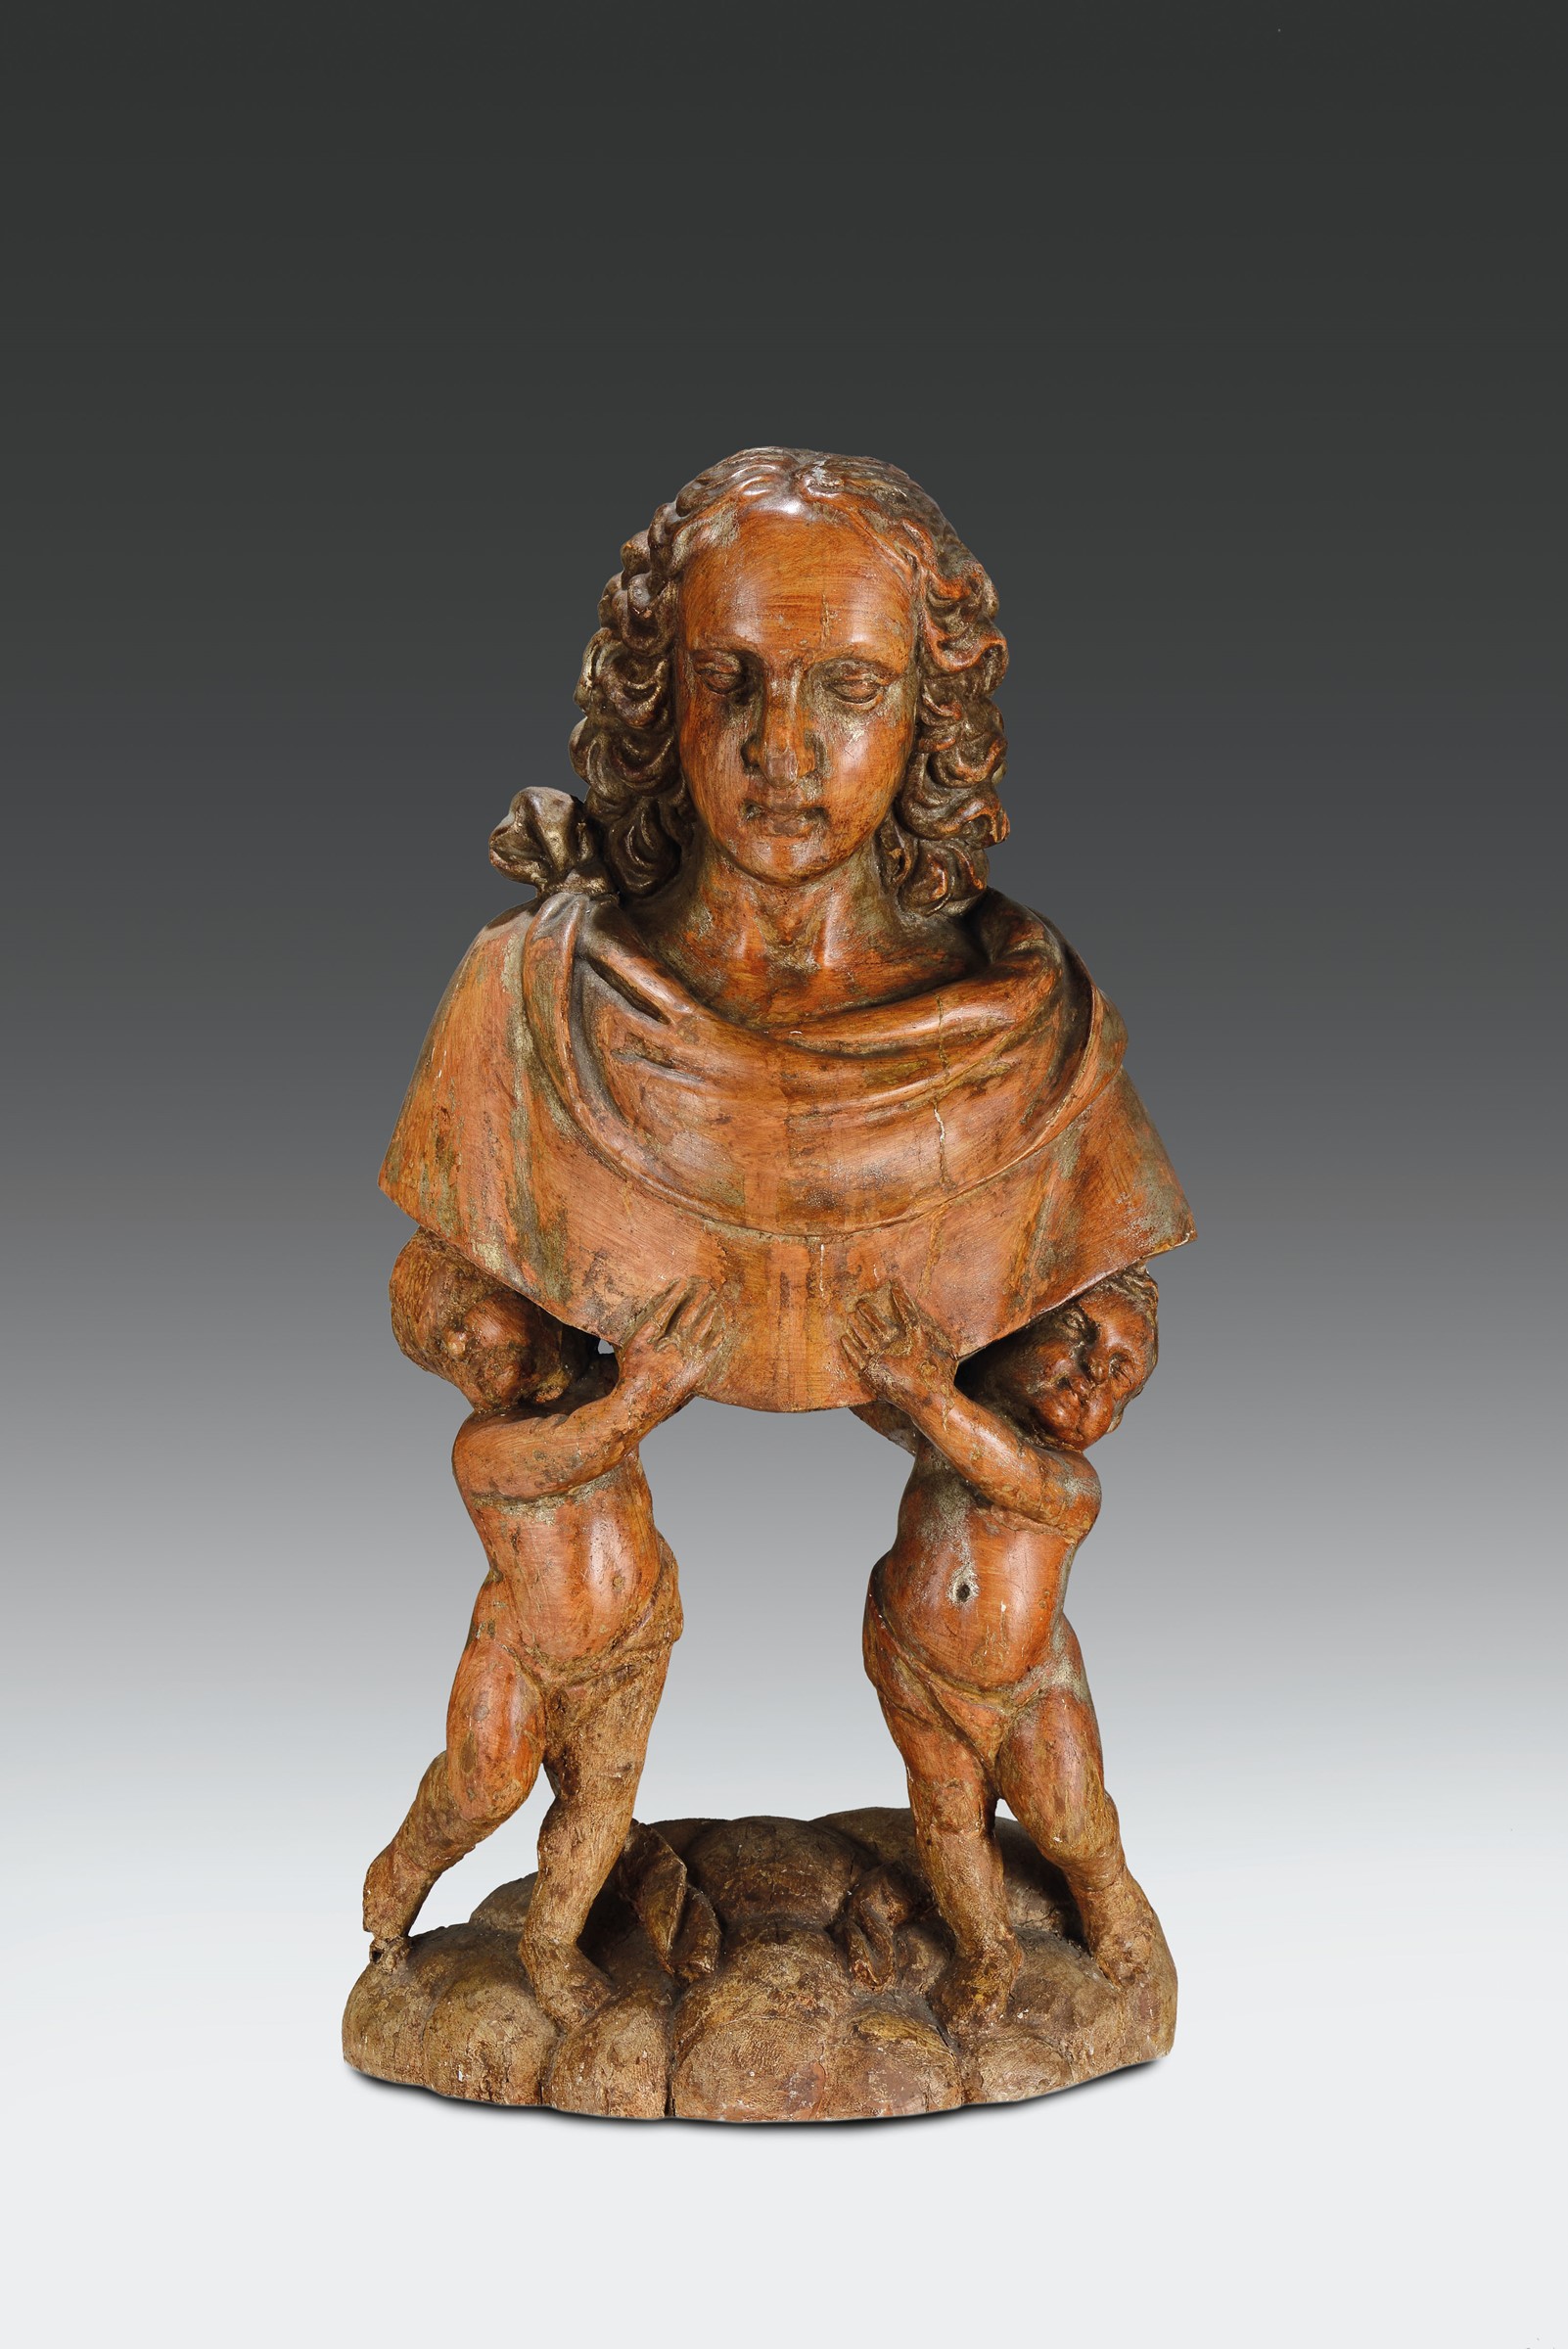 Coppia di busti in legno scolpito, scultore barocco italiano del XVII secolo, altezza cm 68, Le - Image 2 of 2